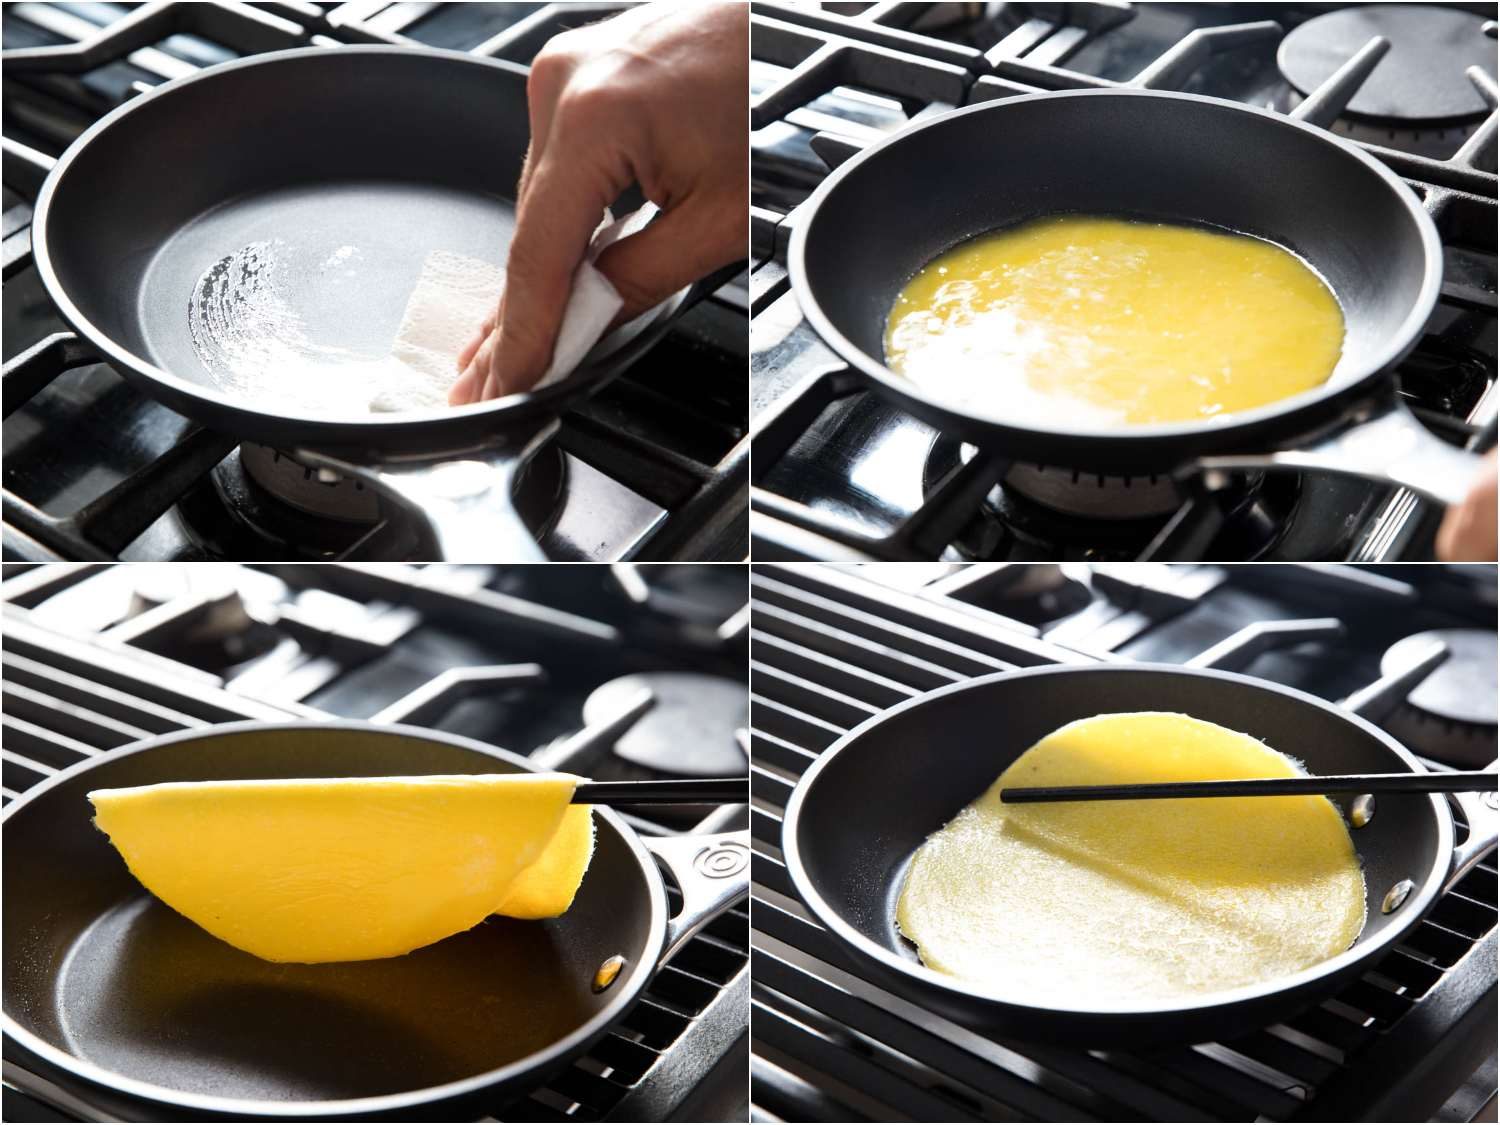 Cooking the egg yolk pancake